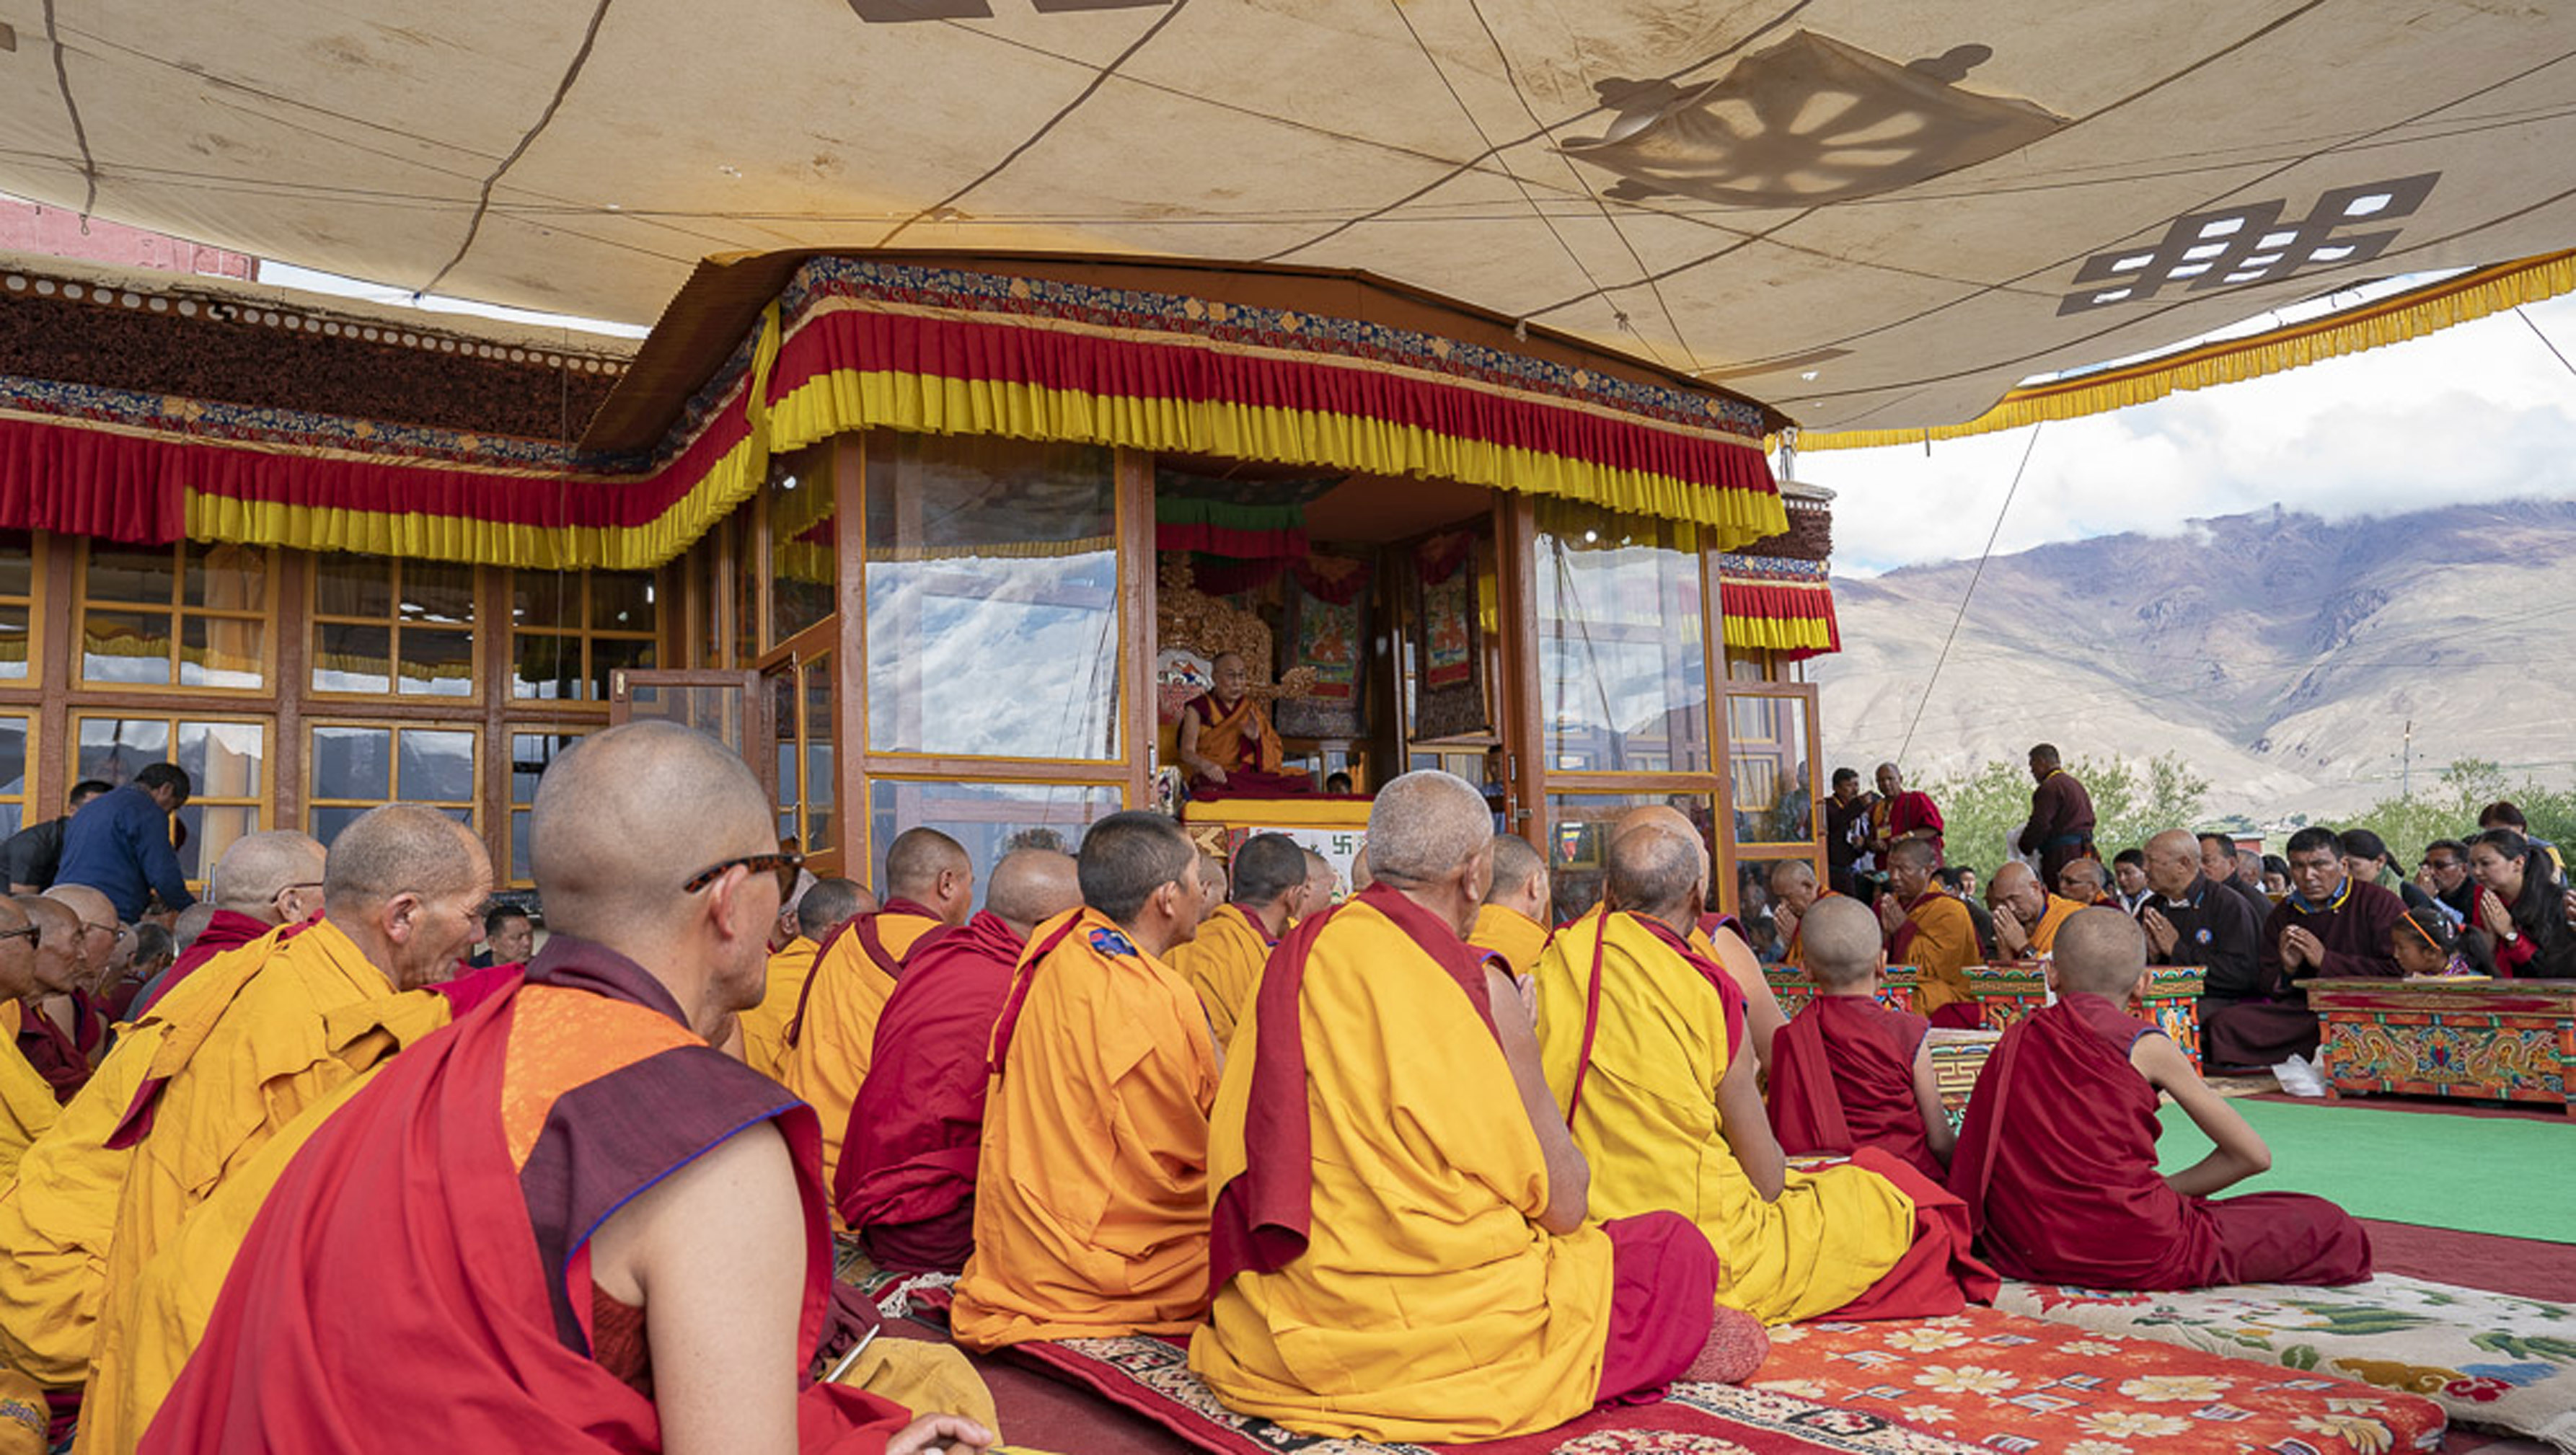 Une vue du pavillon pendant l'enseignement de Sa Sainteté le Dalaï-Lama à Padum, Zanskar, Inde, le 22 juillet 2018. Photo de Tenzin Choejor.